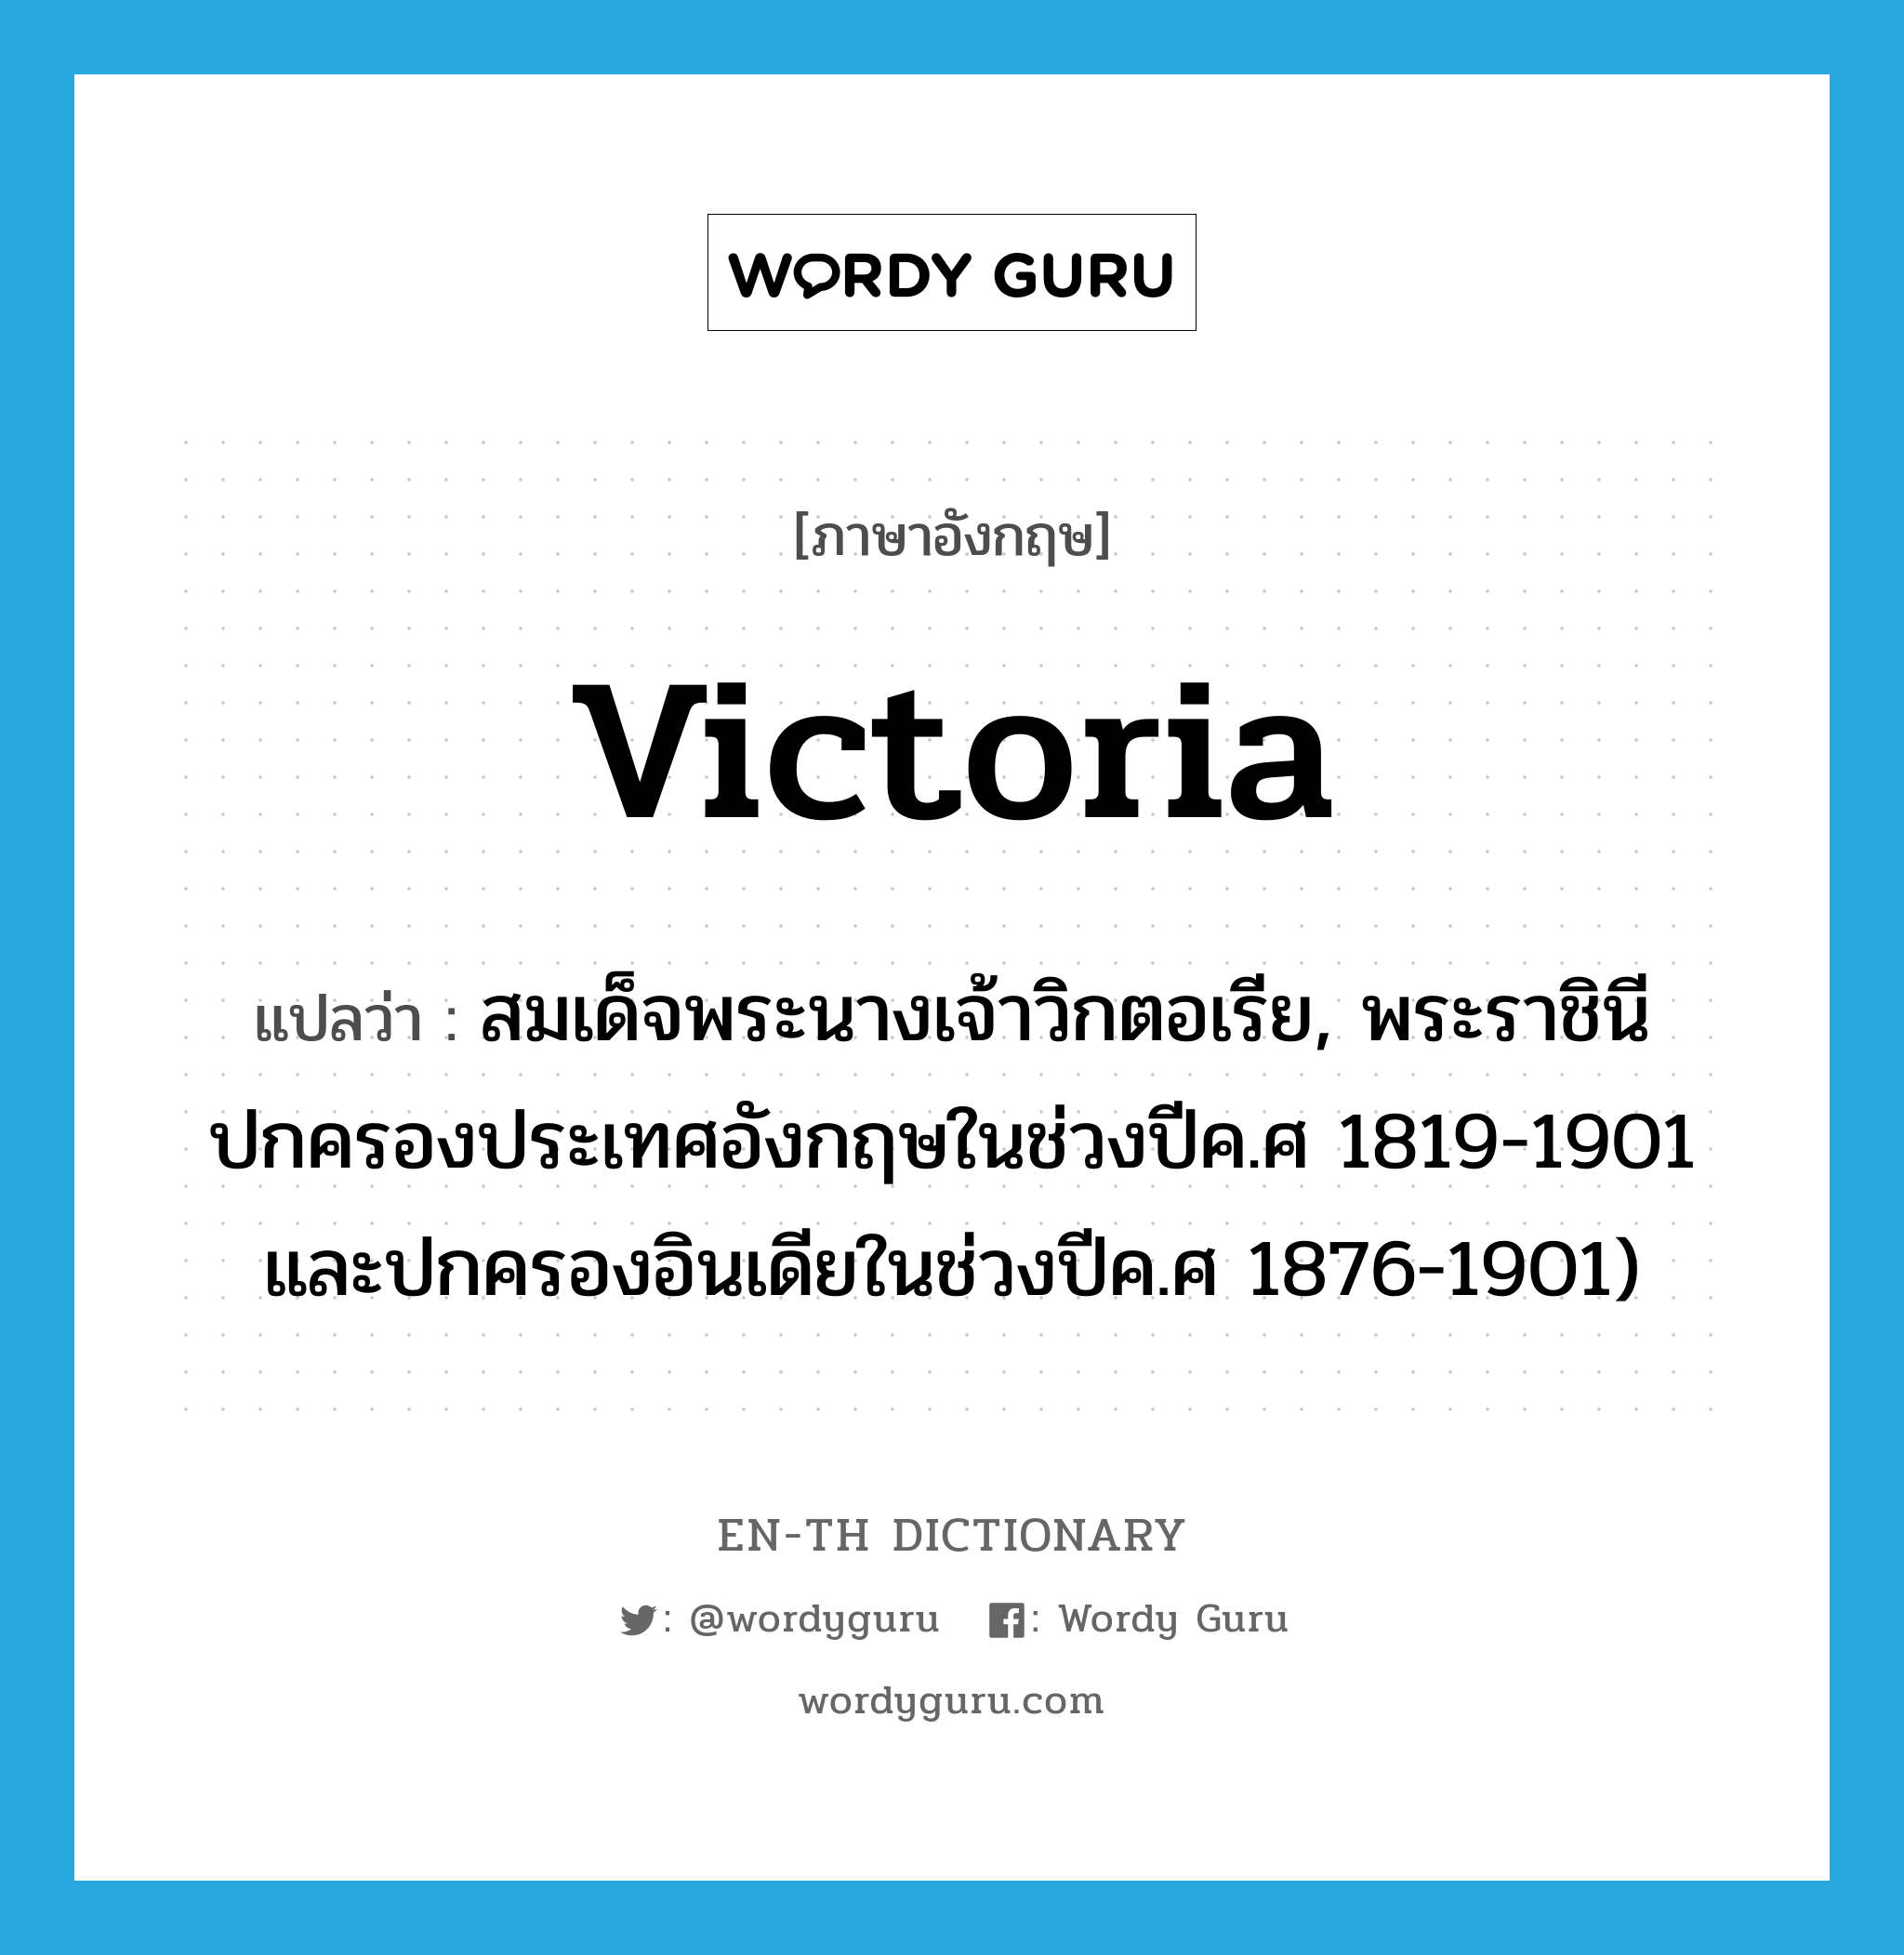 Victoria แปลว่า?, คำศัพท์ภาษาอังกฤษ Victoria แปลว่า สมเด็จพระนางเจ้าวิกตอเรีย, พระราชินีปกครองประเทศอังกฤษในช่วงปีค.ศ 1819-1901 และปกครองอินเดียในช่วงปีค.ศ 1876-1901) ประเภท N หมวด N